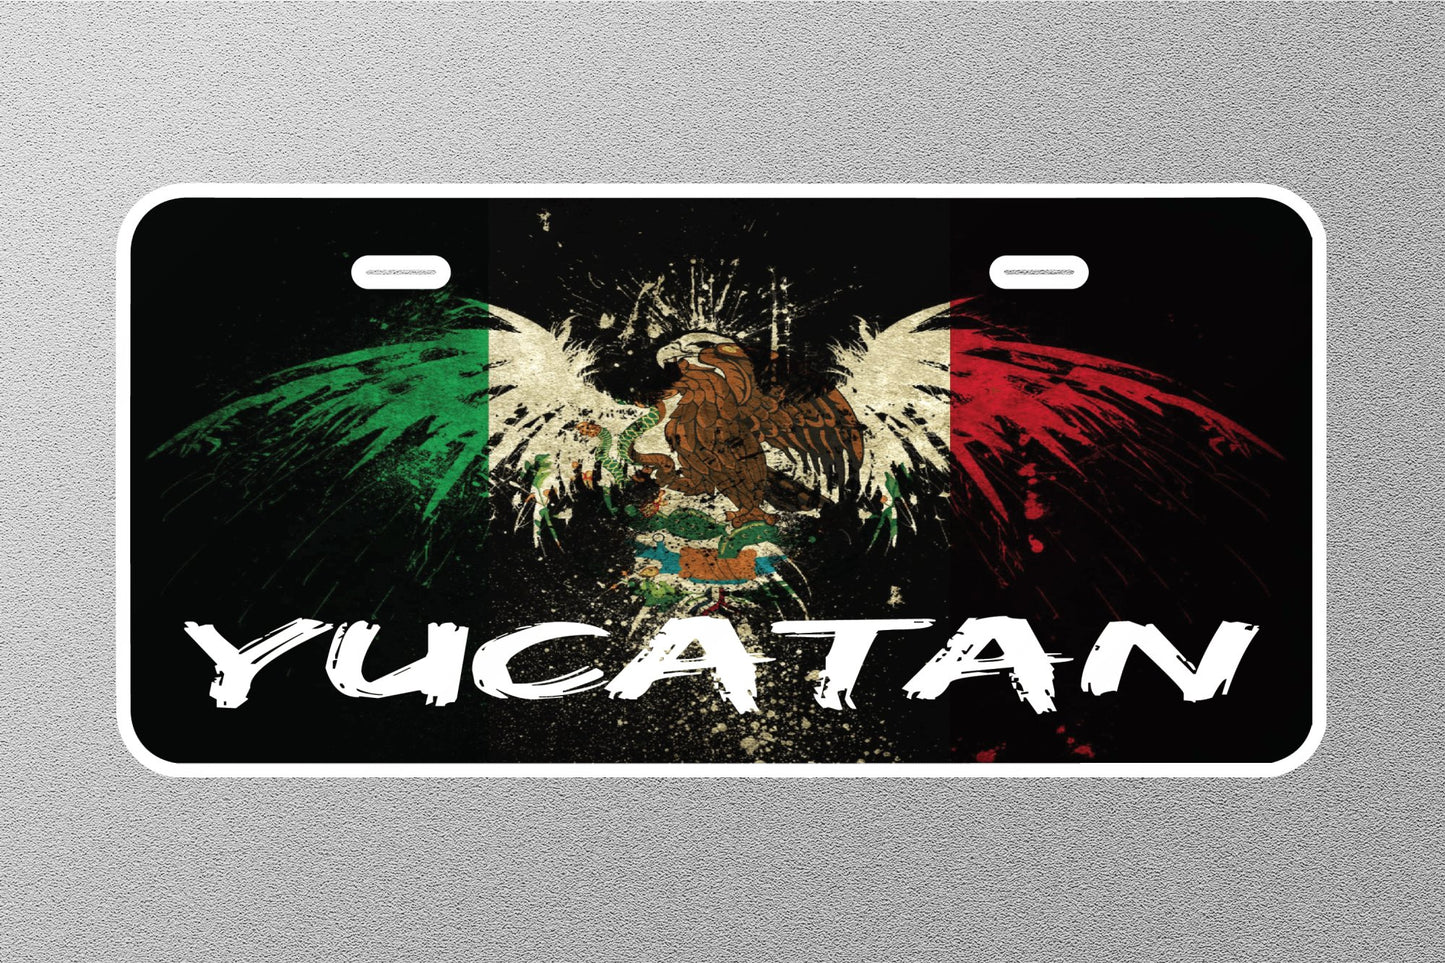 YUCATAN Mexico Licence Plate Sticker